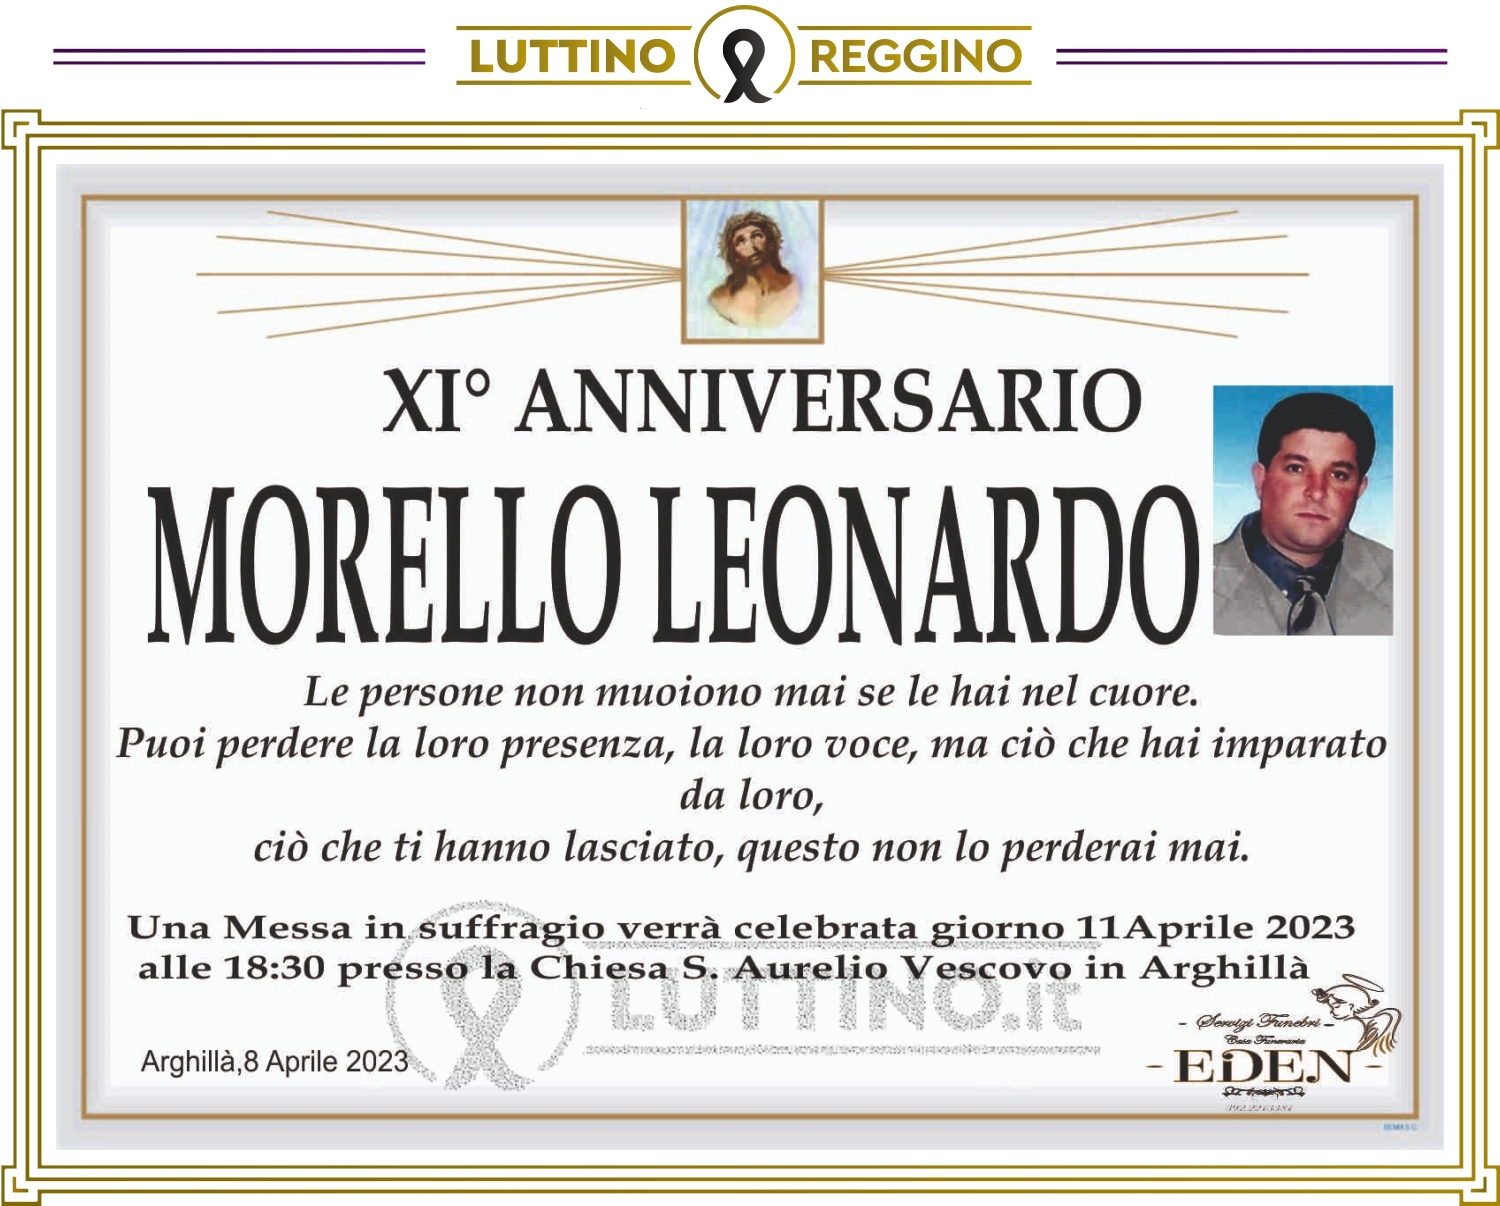 Leonardo Morello